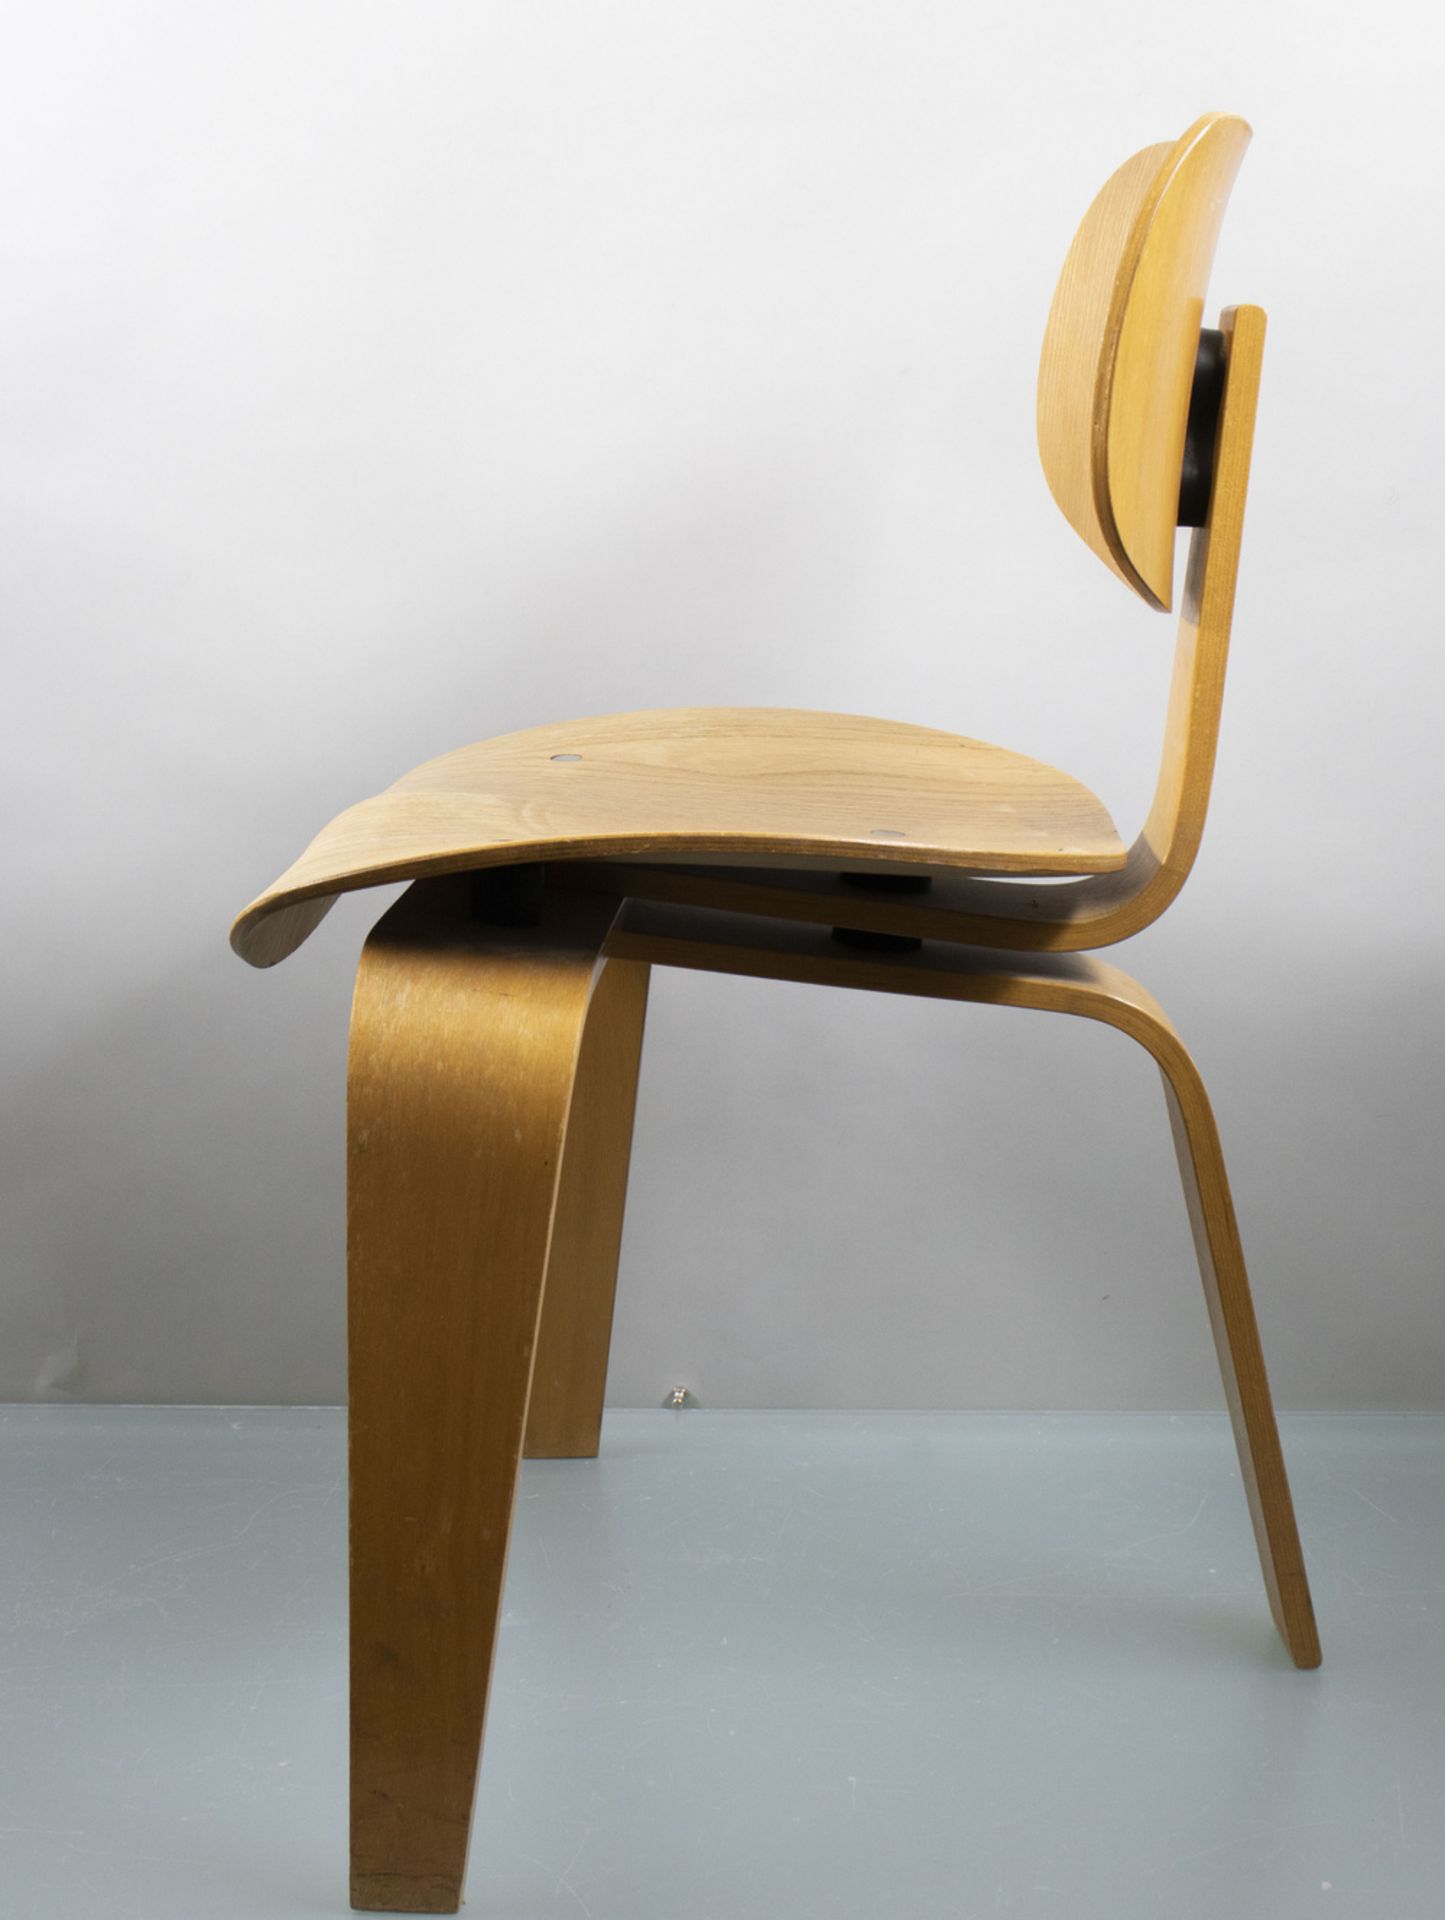 Dreibein-Stuhl / A tripod chair, Egon Eiermann und Wilde & Spieth, nach 1949 - Image 2 of 10